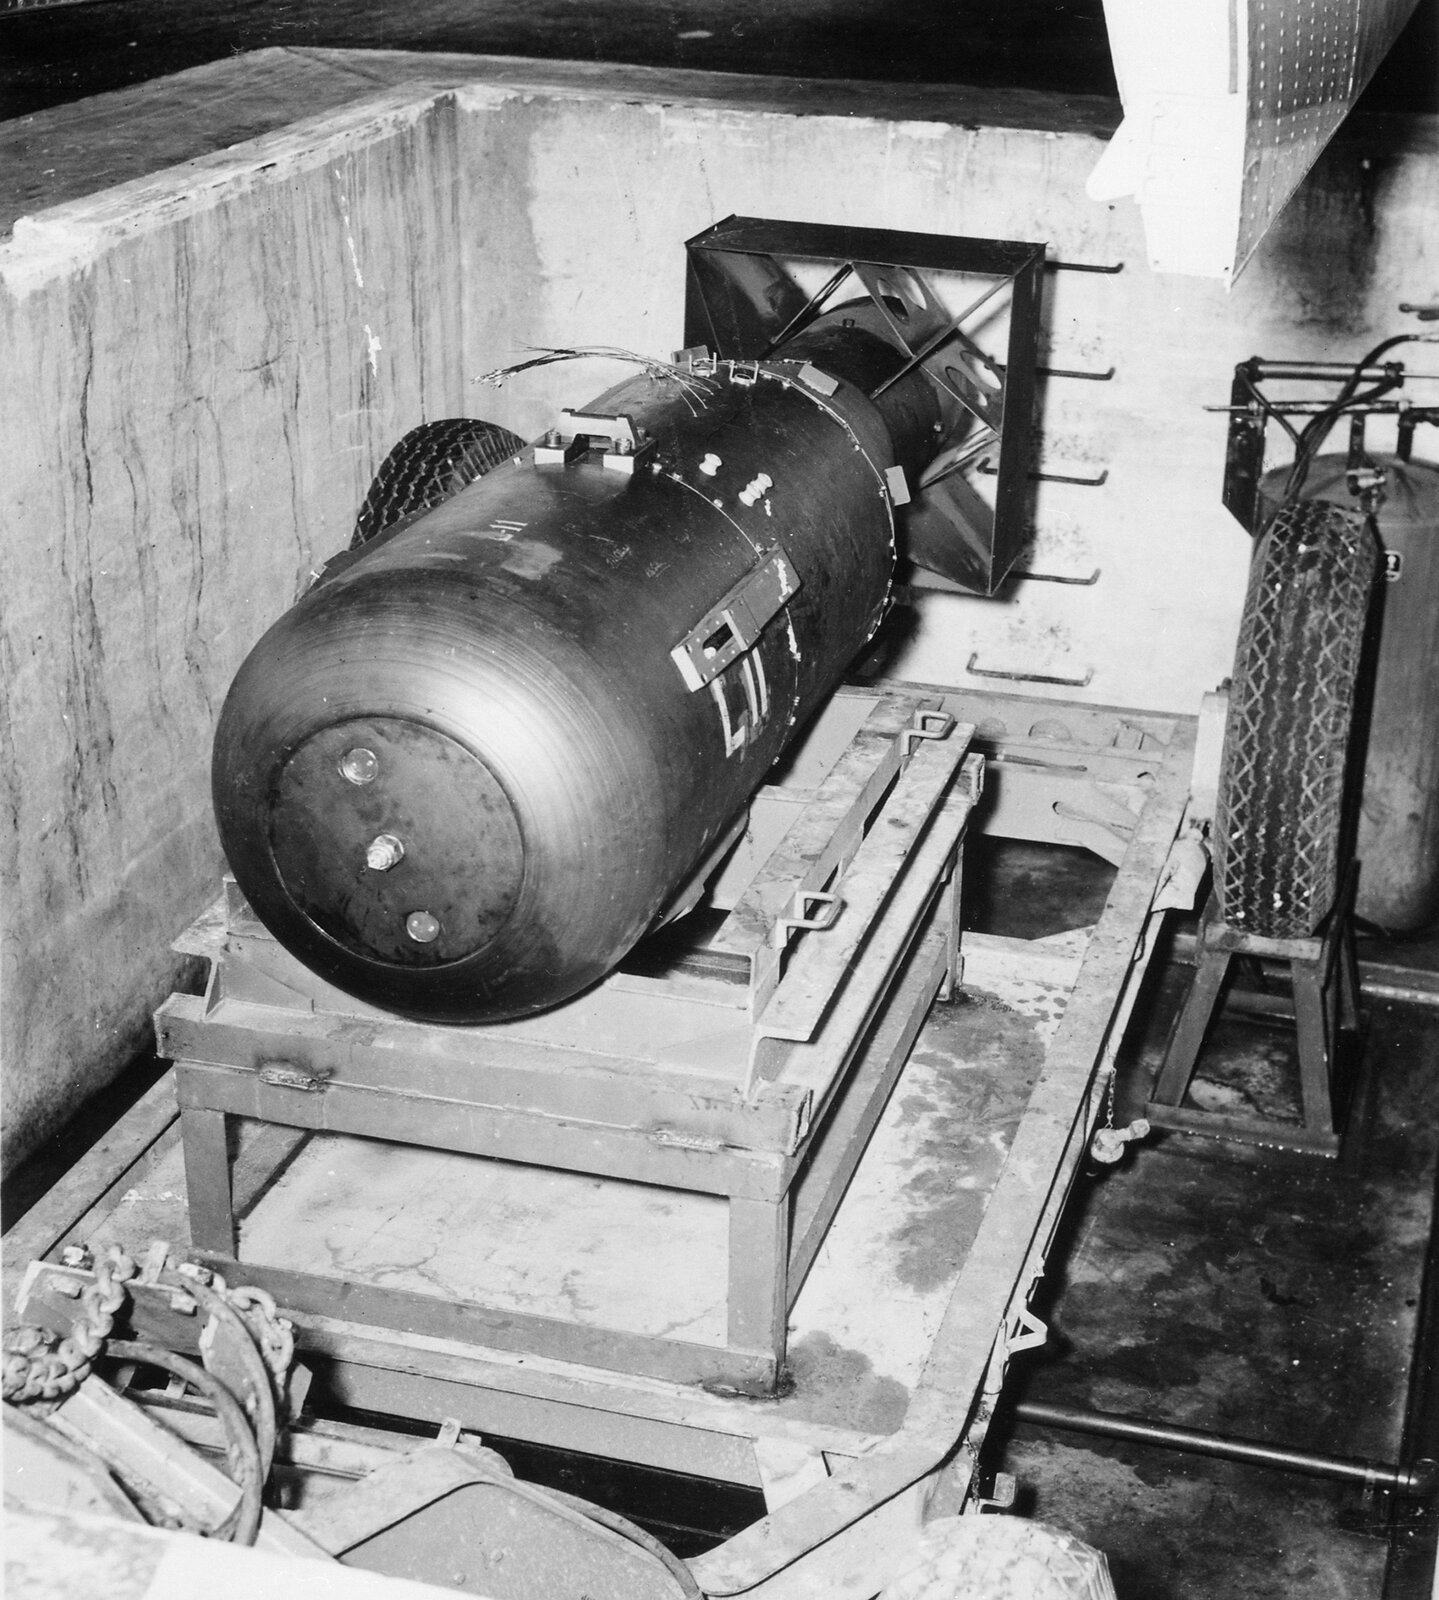 Czarno‑białe zdjęcie 1: bomba atomowa Little Boy zrzucona na Hiroszimę. Bomba w kształcie cylindra. Długość około 1 metr, średnica około 50 centymetrów. Bomba umieszczona jest na metalowej ramie w kształcie prostopadłościanu.